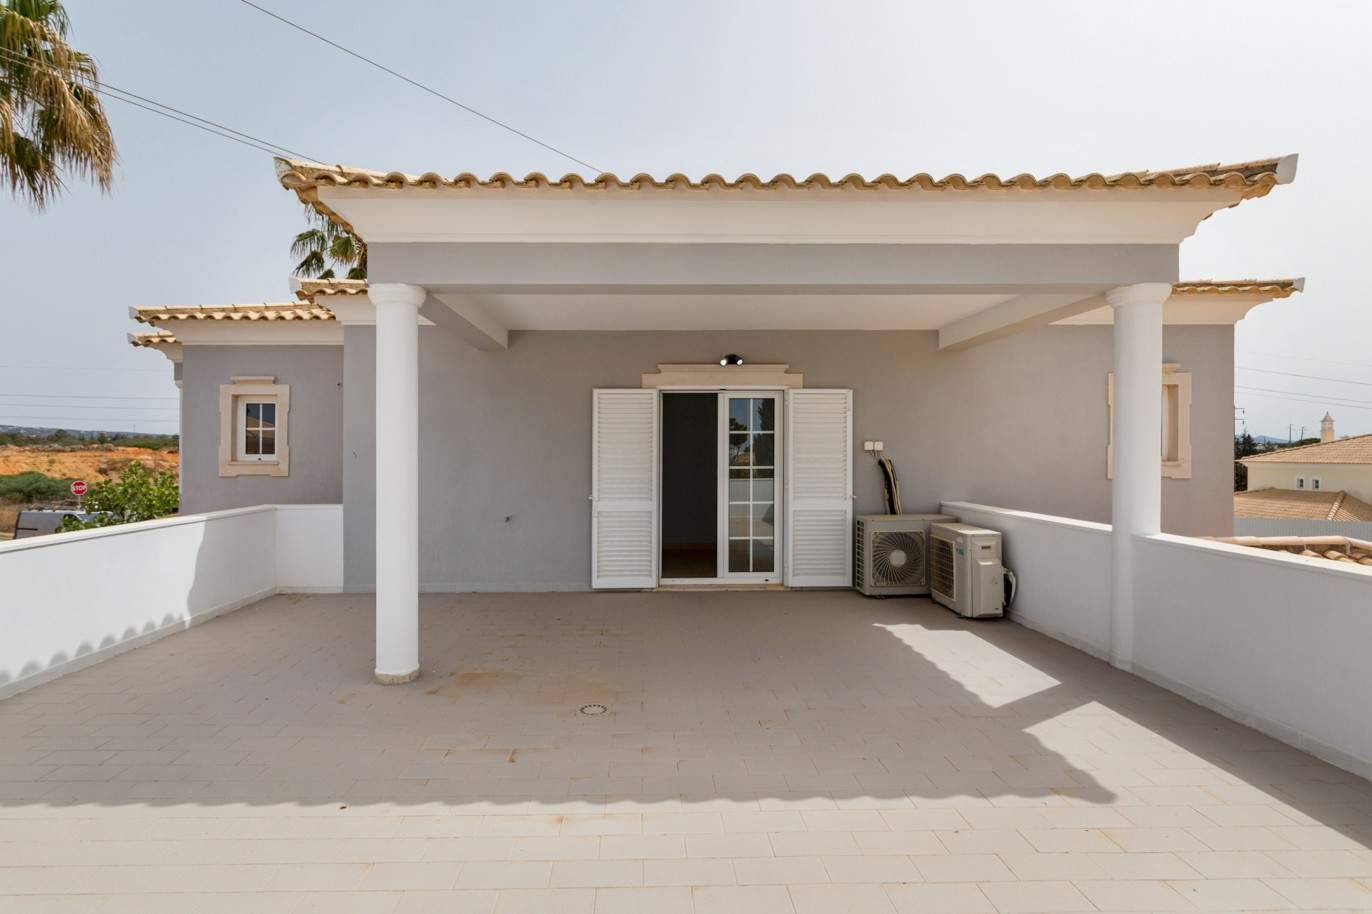 4 Bedroom Villa with pool à vendre à Quarteira, Algarve_201728